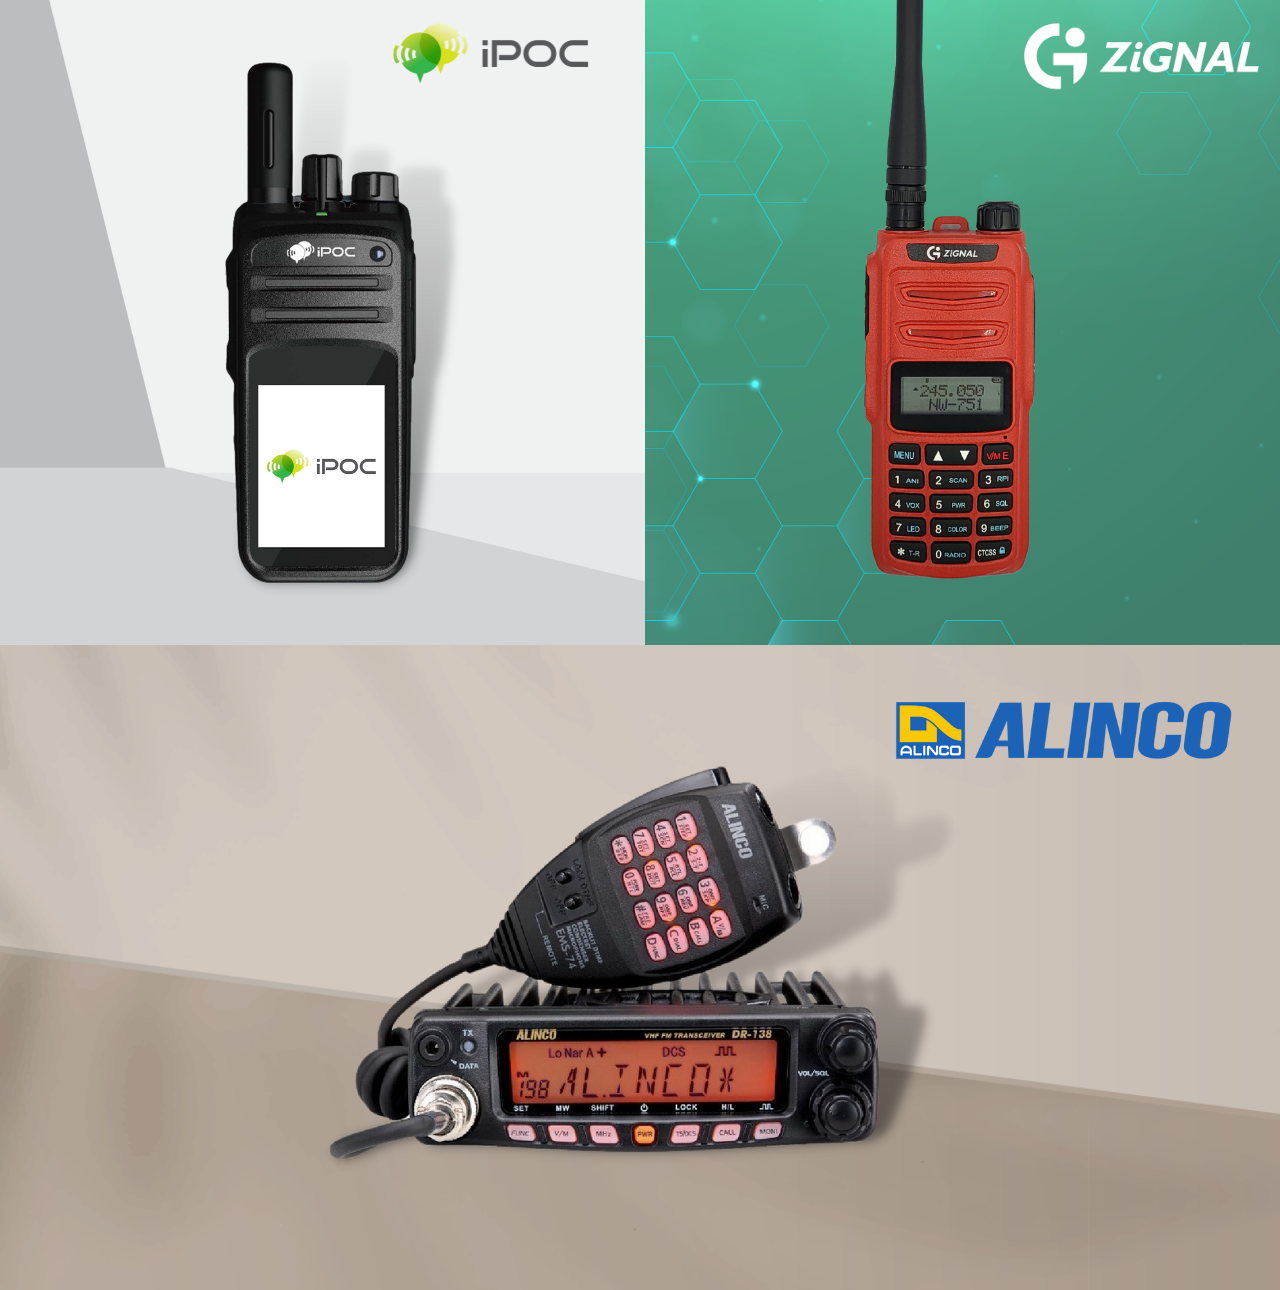 วิทยุสื่อสาร ราคาถูก Walkie Talkie ได้ เครื่องแดงและเครื่องดำ ดีทุกยี่ห้อ ทั้ง Motorola icom ipoc zignal และ alinco ของแท้ รับประกันทุกชิ้น